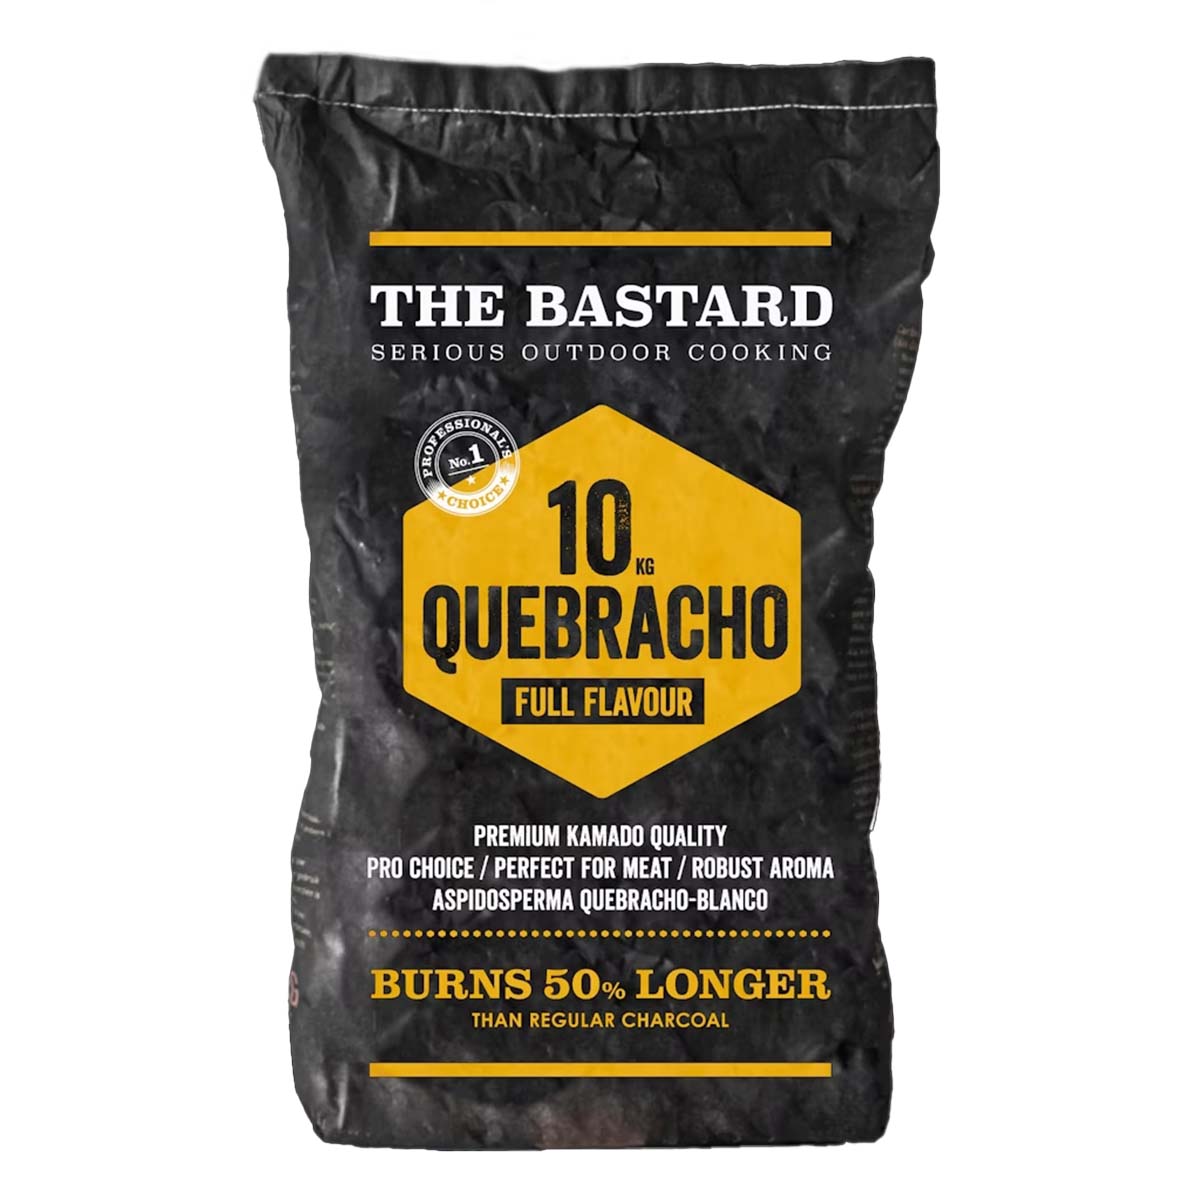 The Bastard Paraguay White Quebracho 10 KG